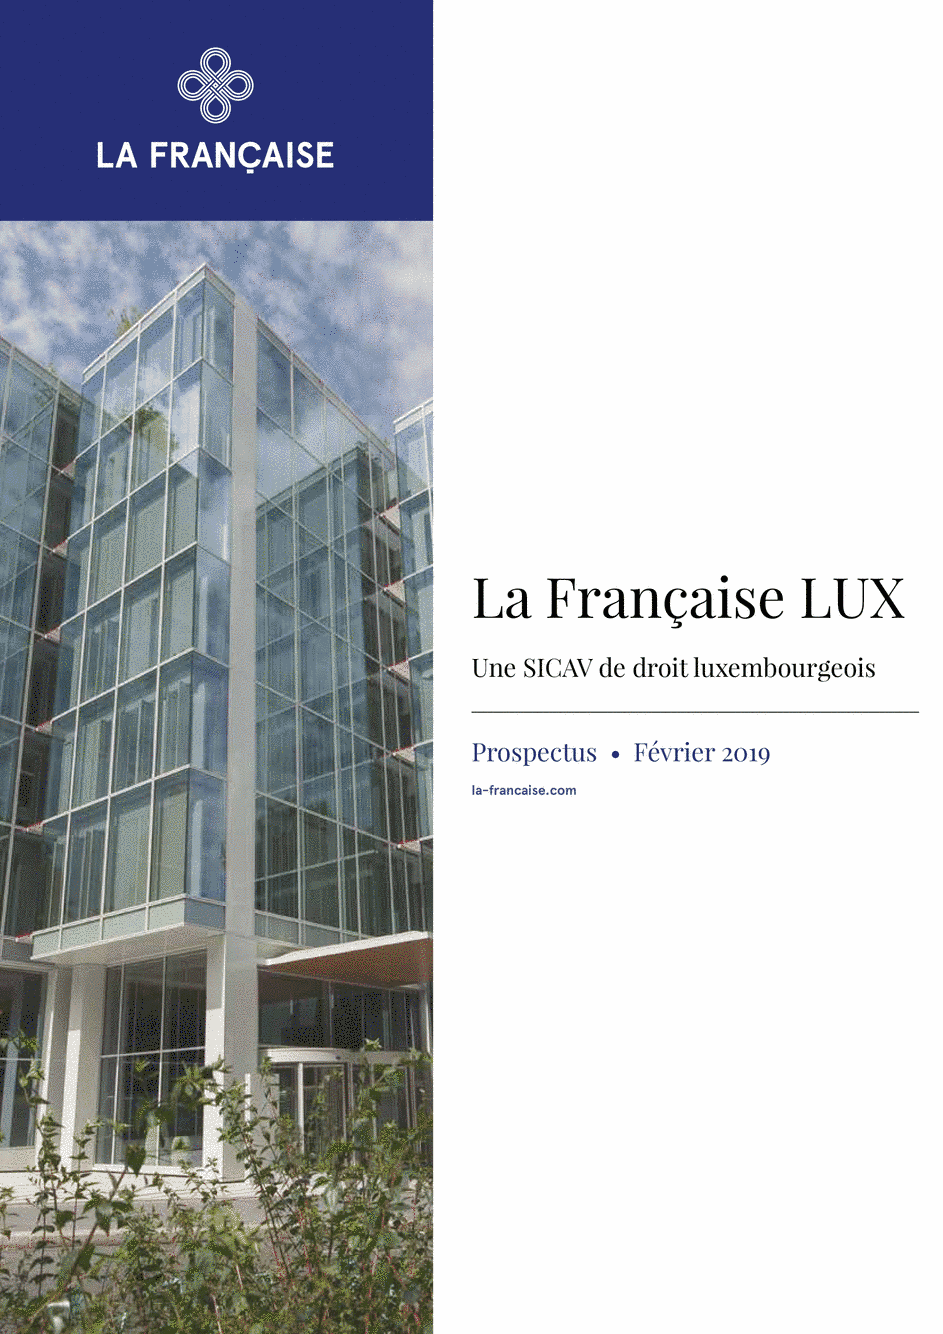 Prospectus La Française LUX - Multi-Asset Income - T (D) EUR - 01/12/2018 - Français